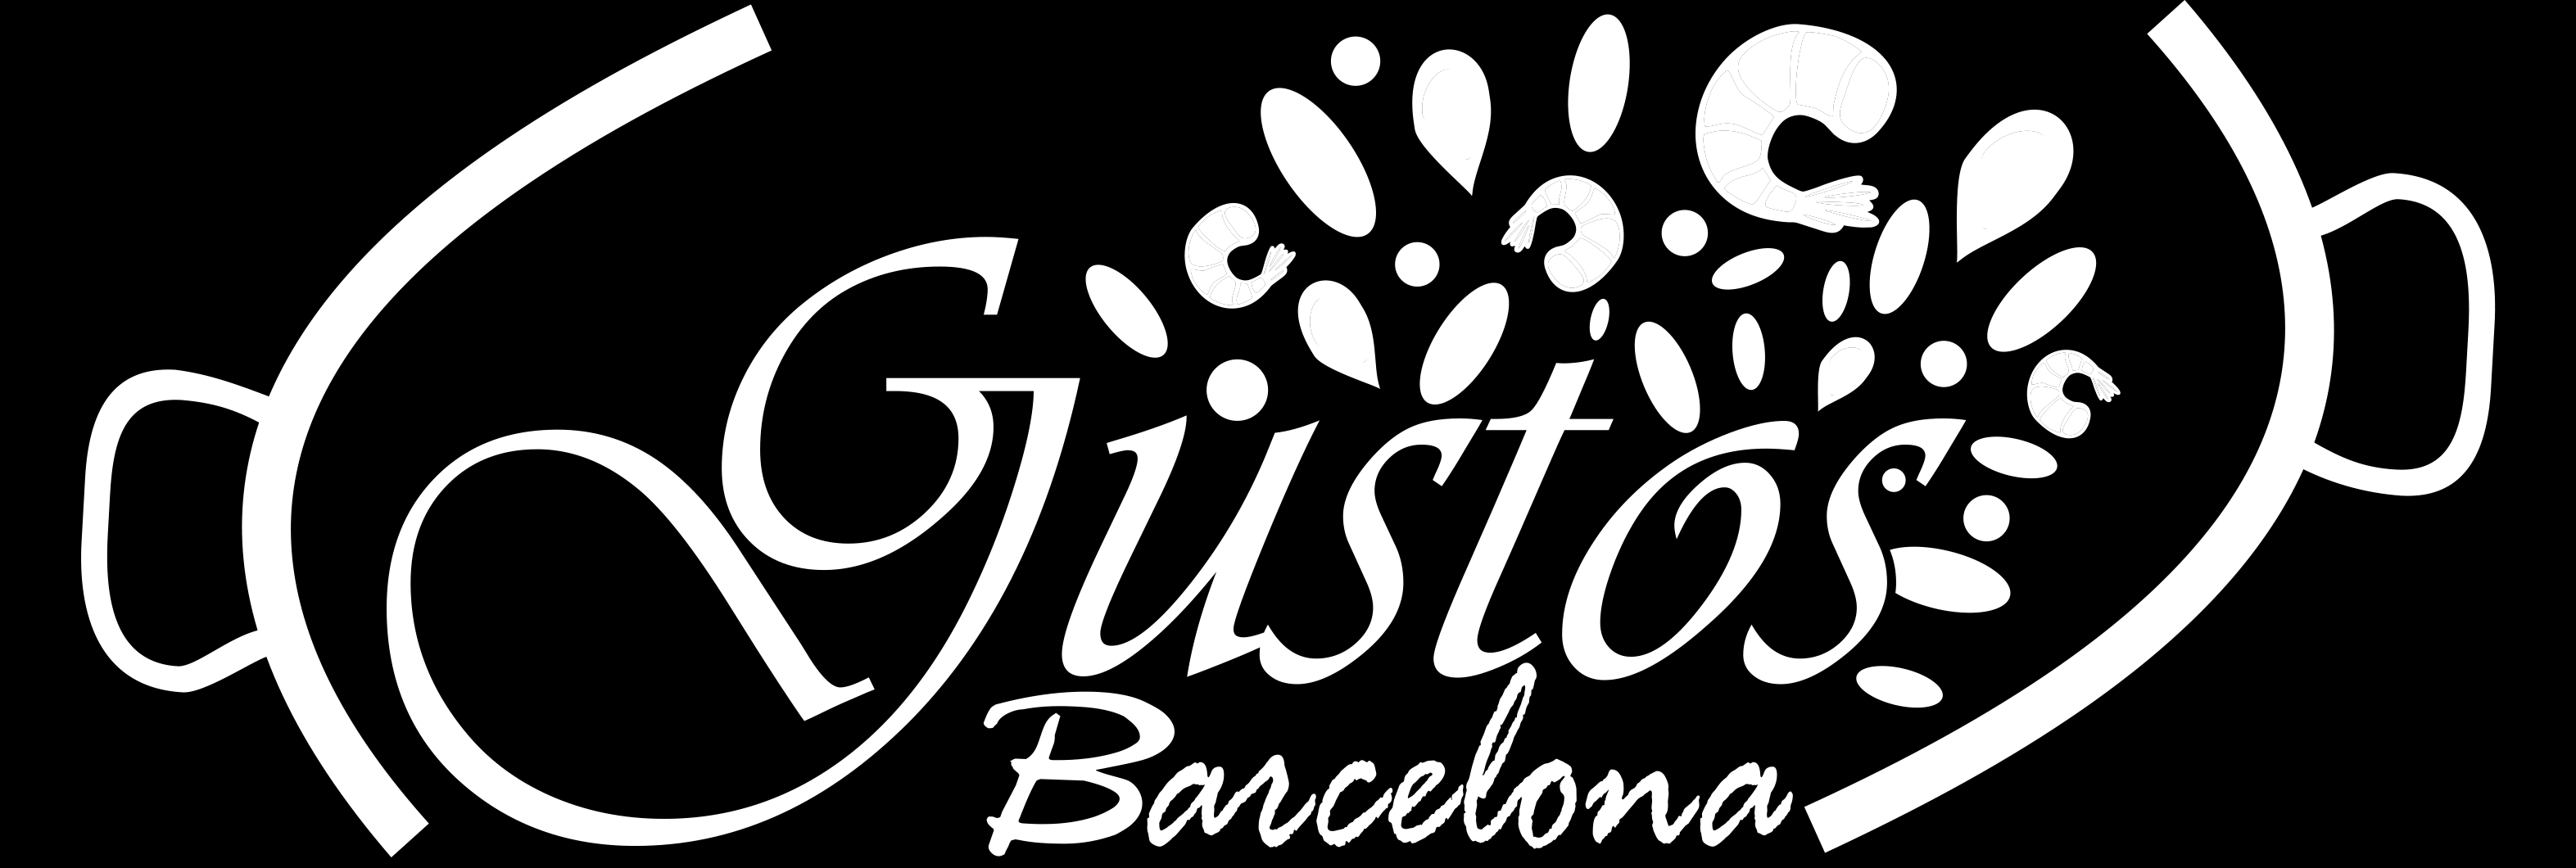 7.- ESPECIALIDADES Las especialidades que se sirven en GUSTOS Barcelona son de primerísima calidad, con un sabor y textura realmente sorprendentes, de las cuales